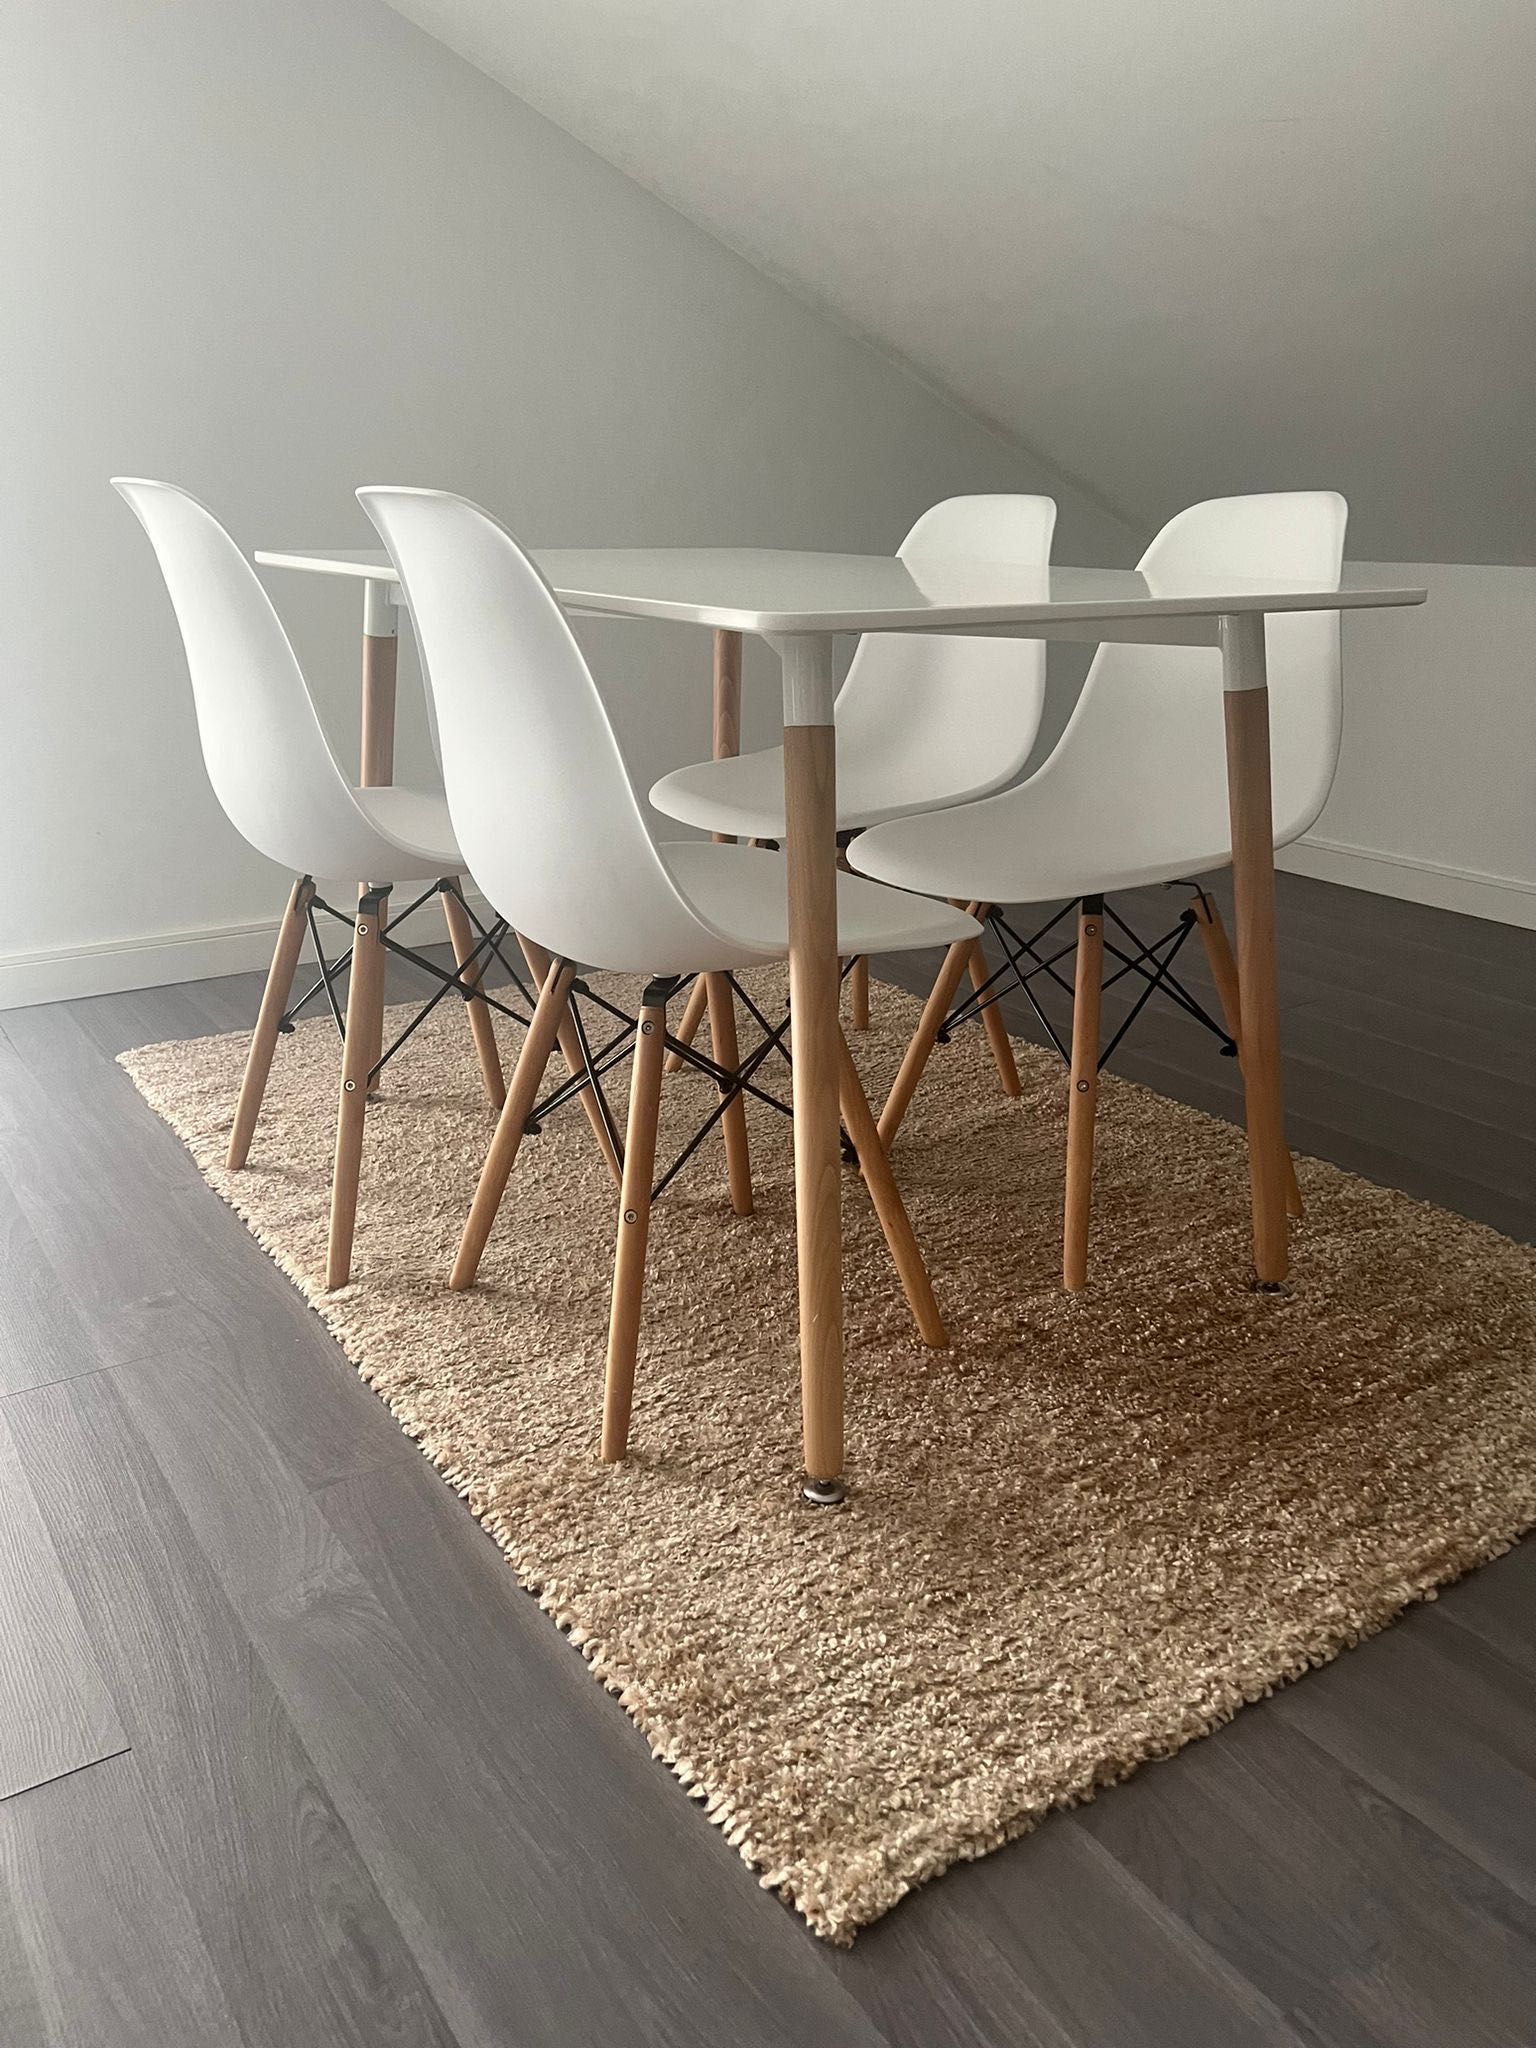 Conjunto mesa com 4 cadeiras